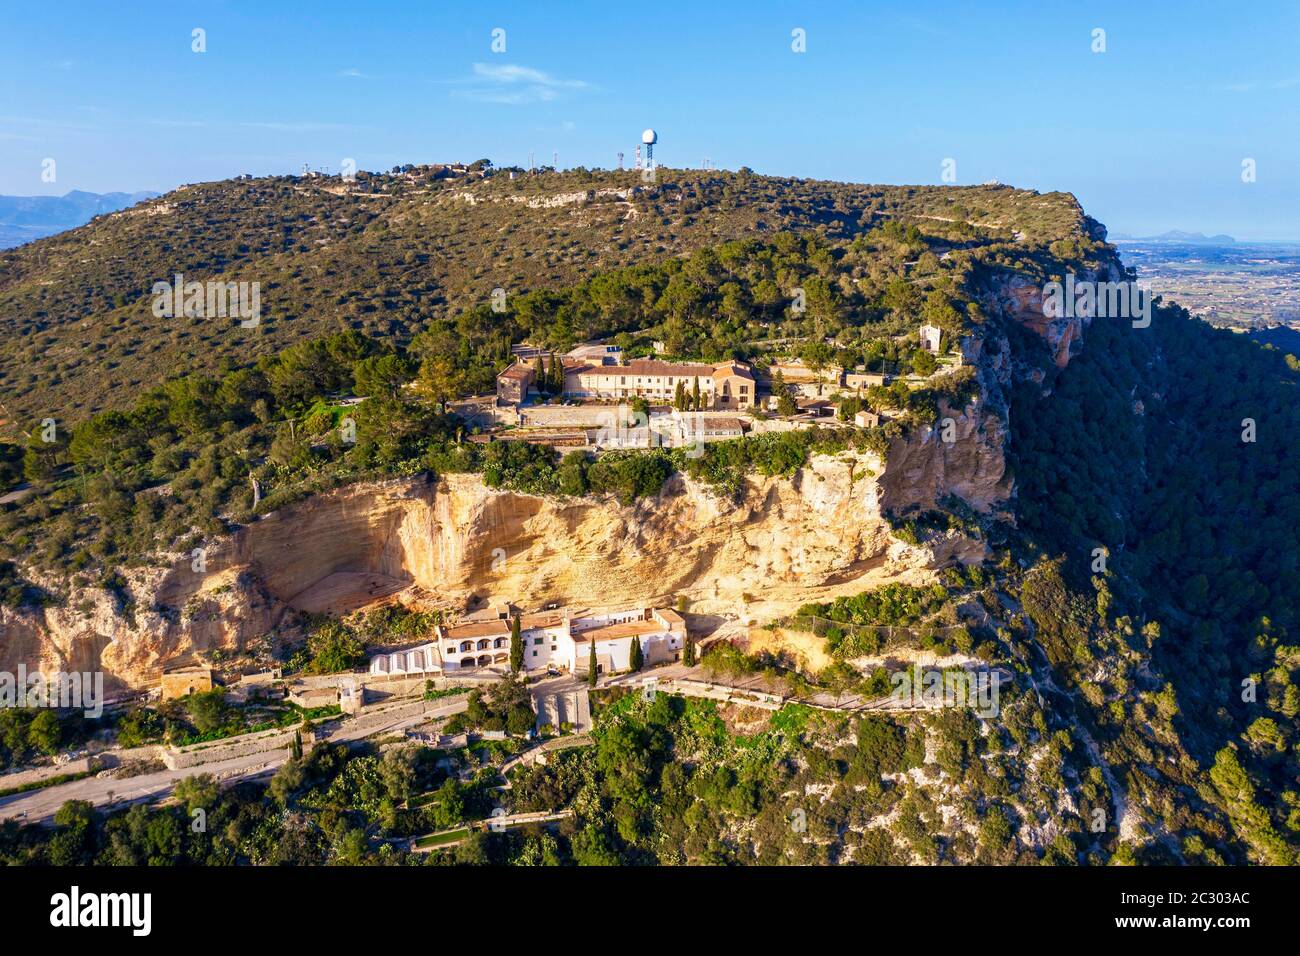 Monastères Santuari de Nostra Senyora de Gracia et Ermita de Sant Honorat, Puig de Randa, région Pla de Majorque, enregistrement de drones, Majorque, Baléares Banque D'Images